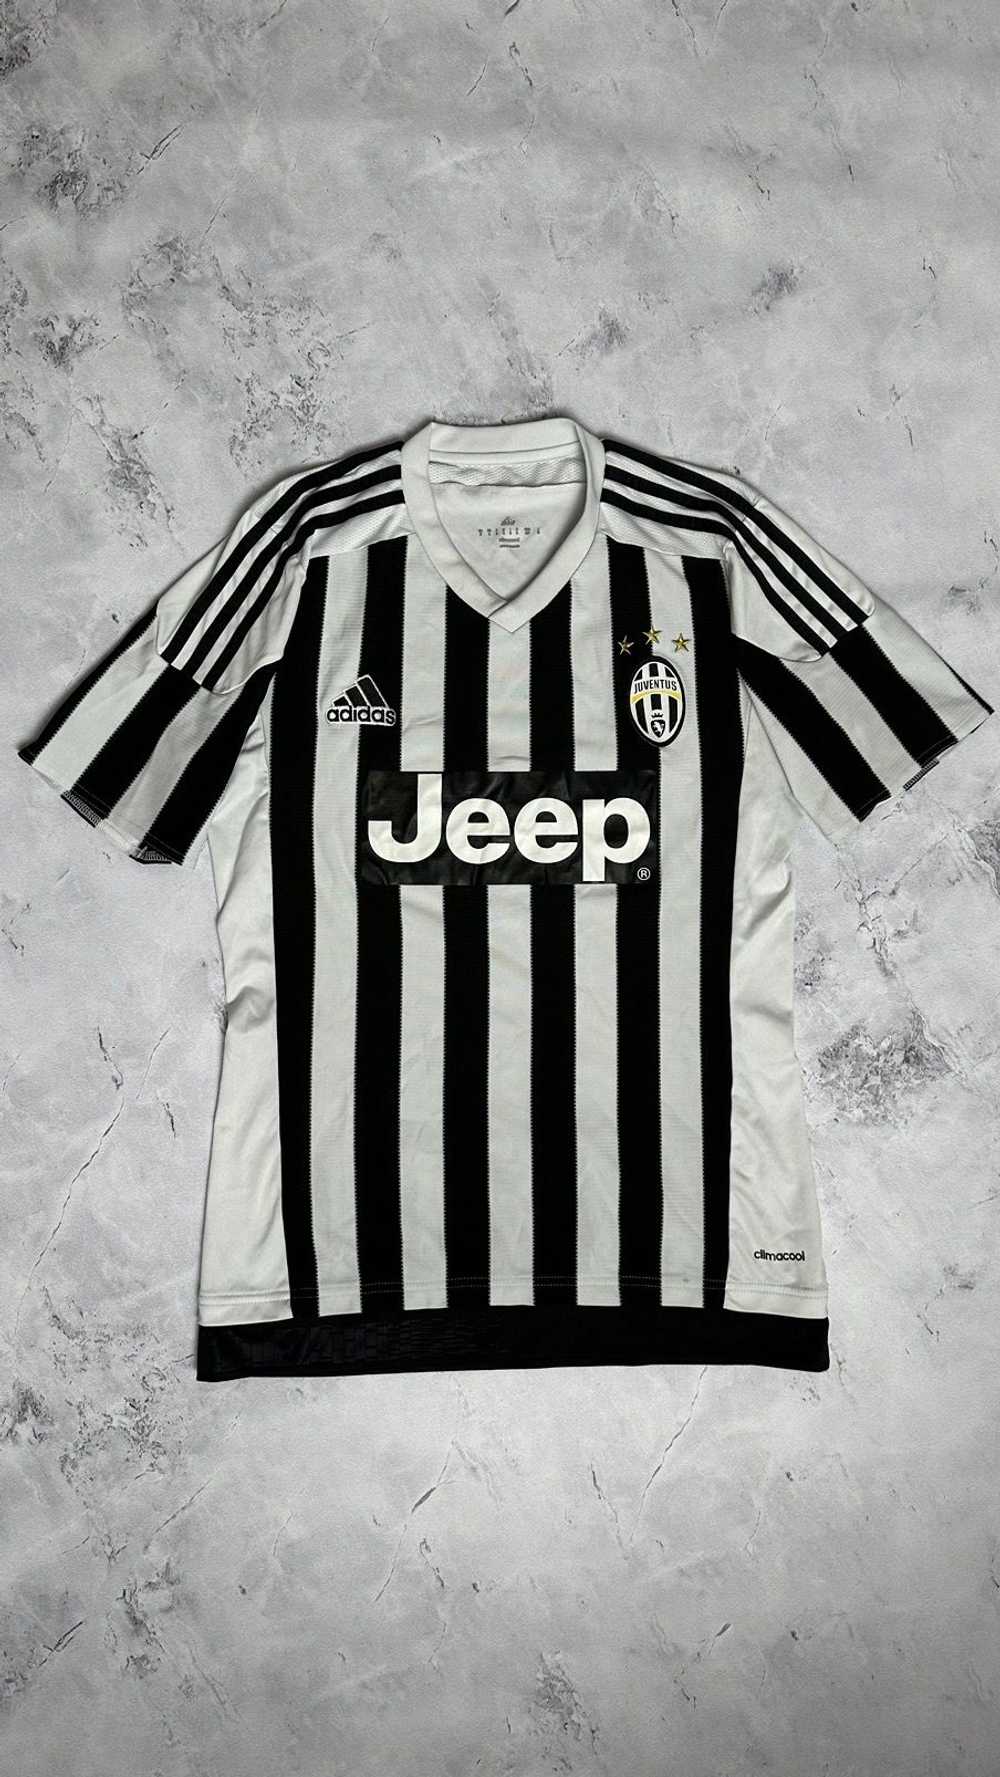 Adidas × Soccer Jersey Juventus 2015 - 2016 Home … - image 1